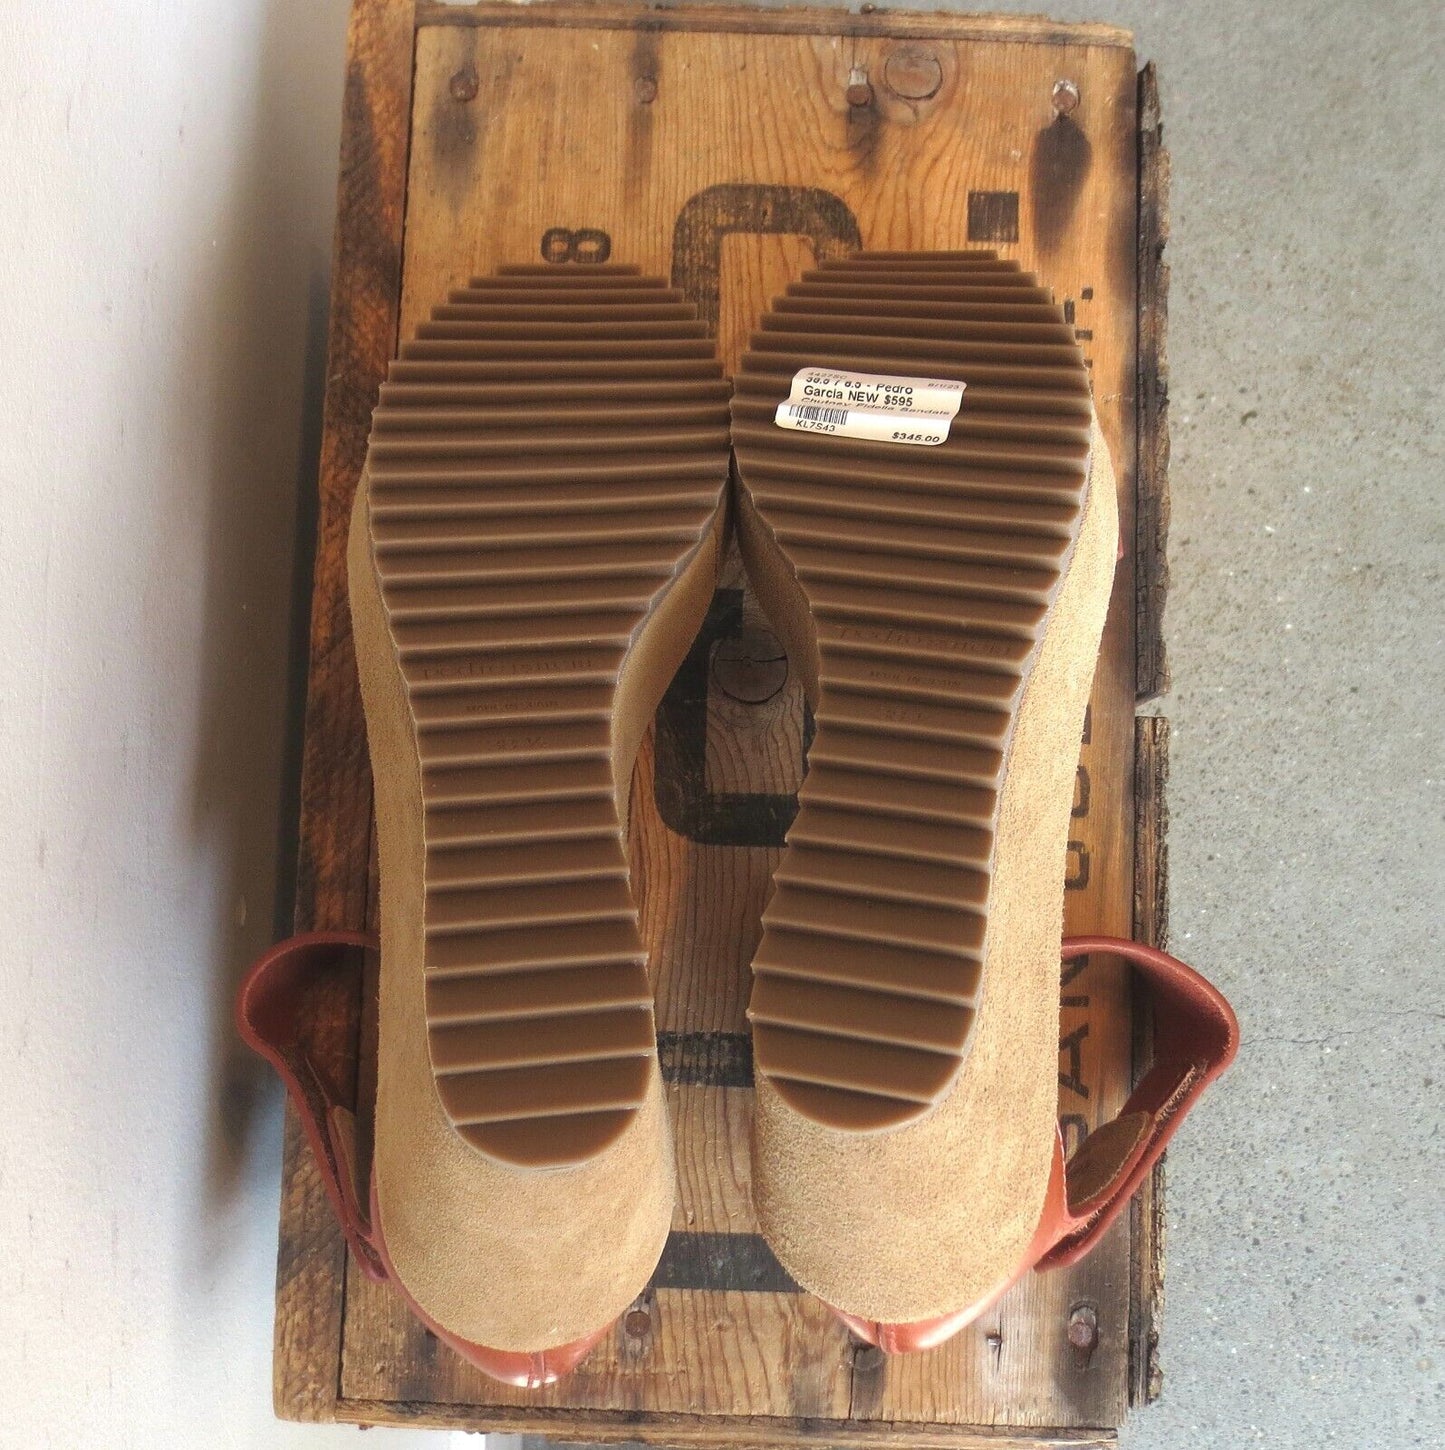 38.5 / 8.5 - Pedro Garcia NEW $595 Chutney Fidelia Sandals NEW w/ Box 4427SC